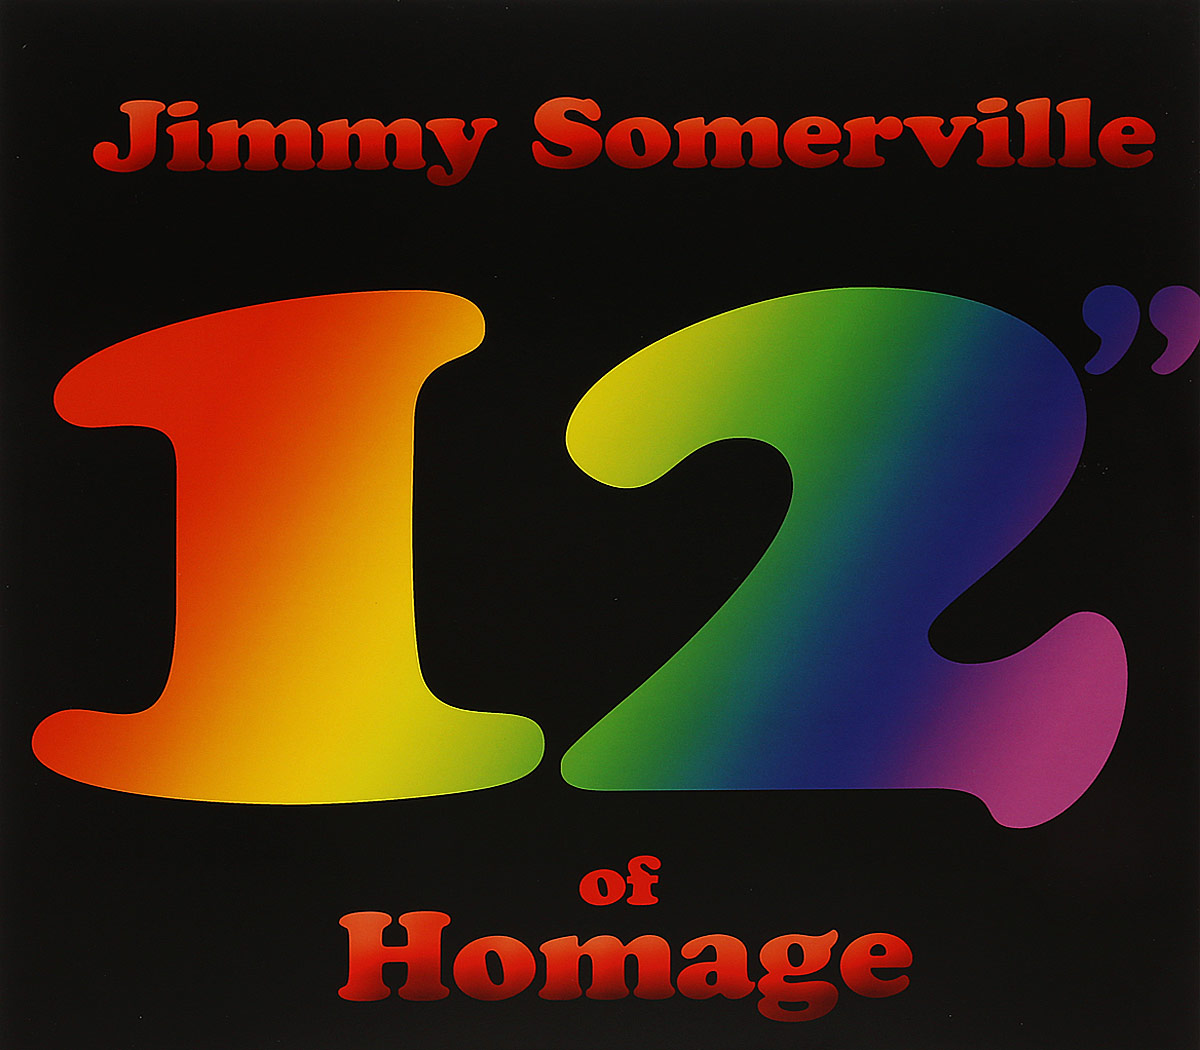 Jimmy Somerville. 12